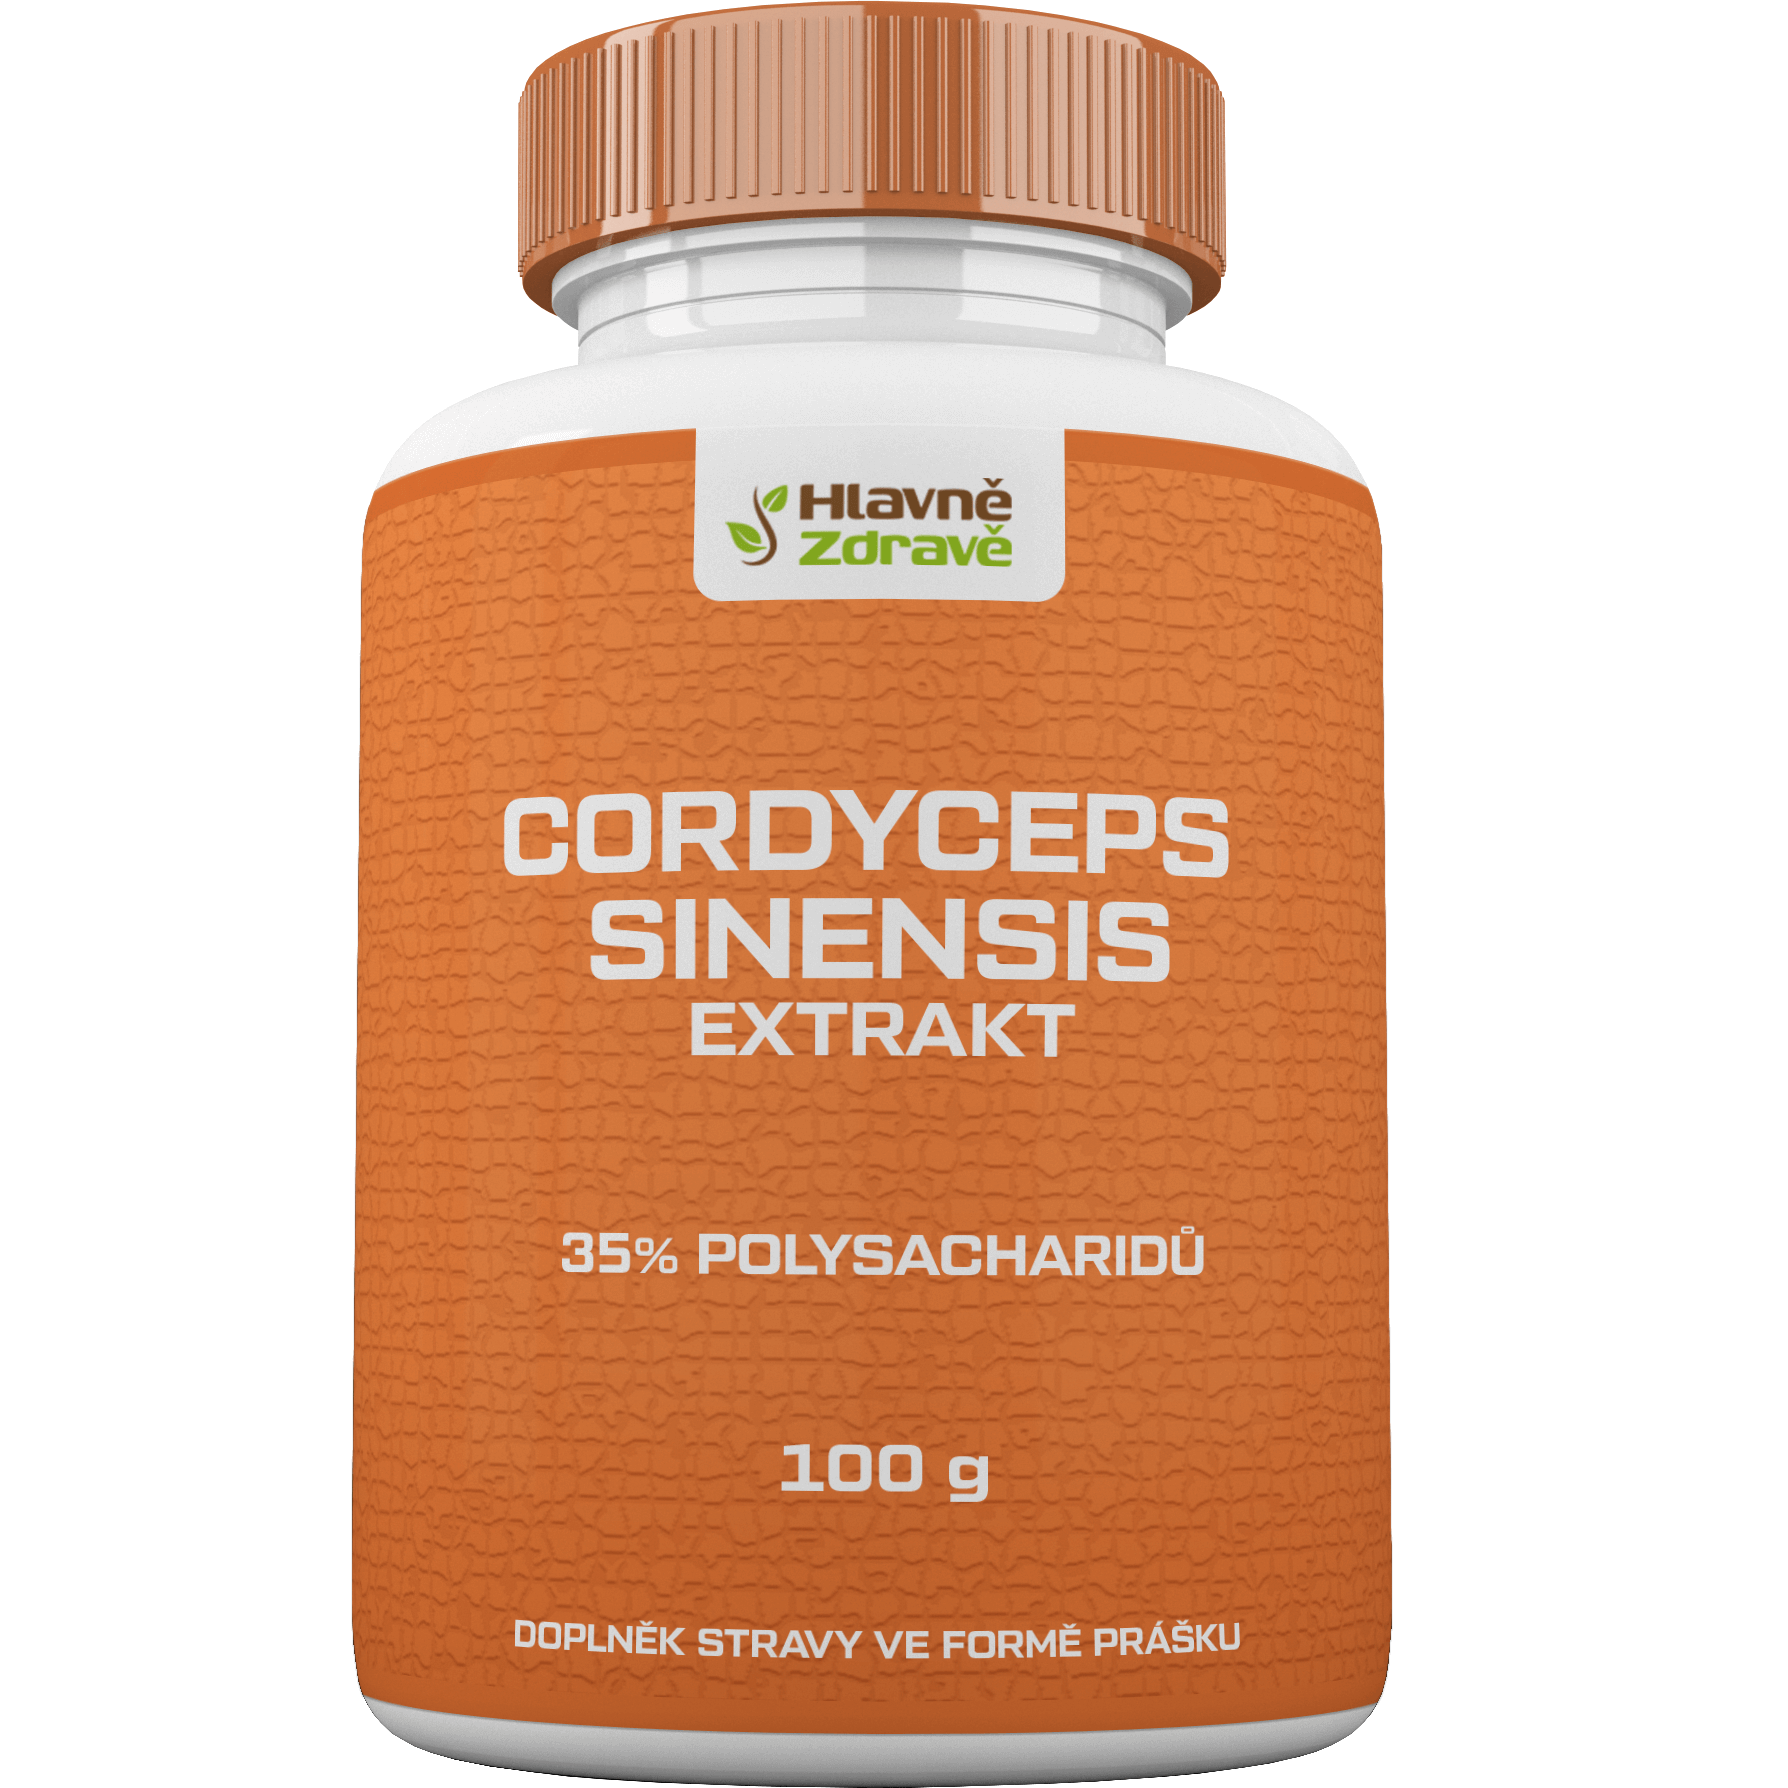 cordyceps sinensis extrakt prášek 35% polysacharidů 100g